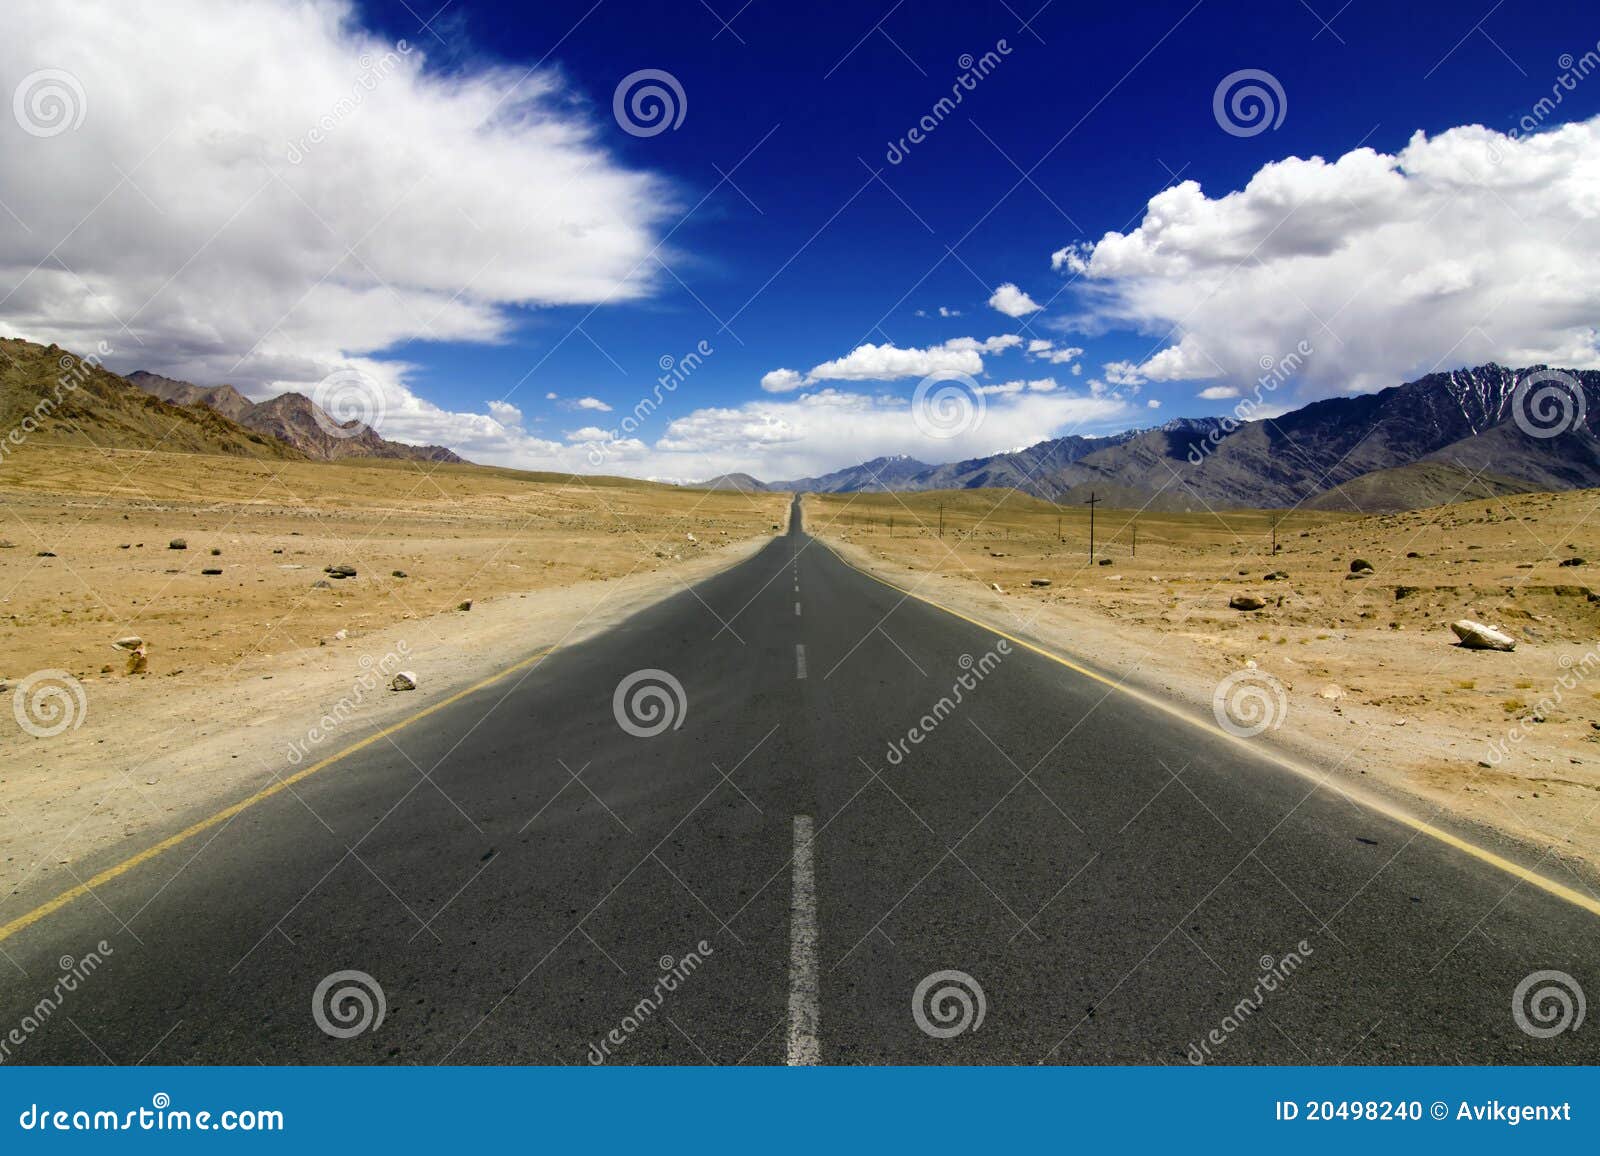 straight road in leh ladakh